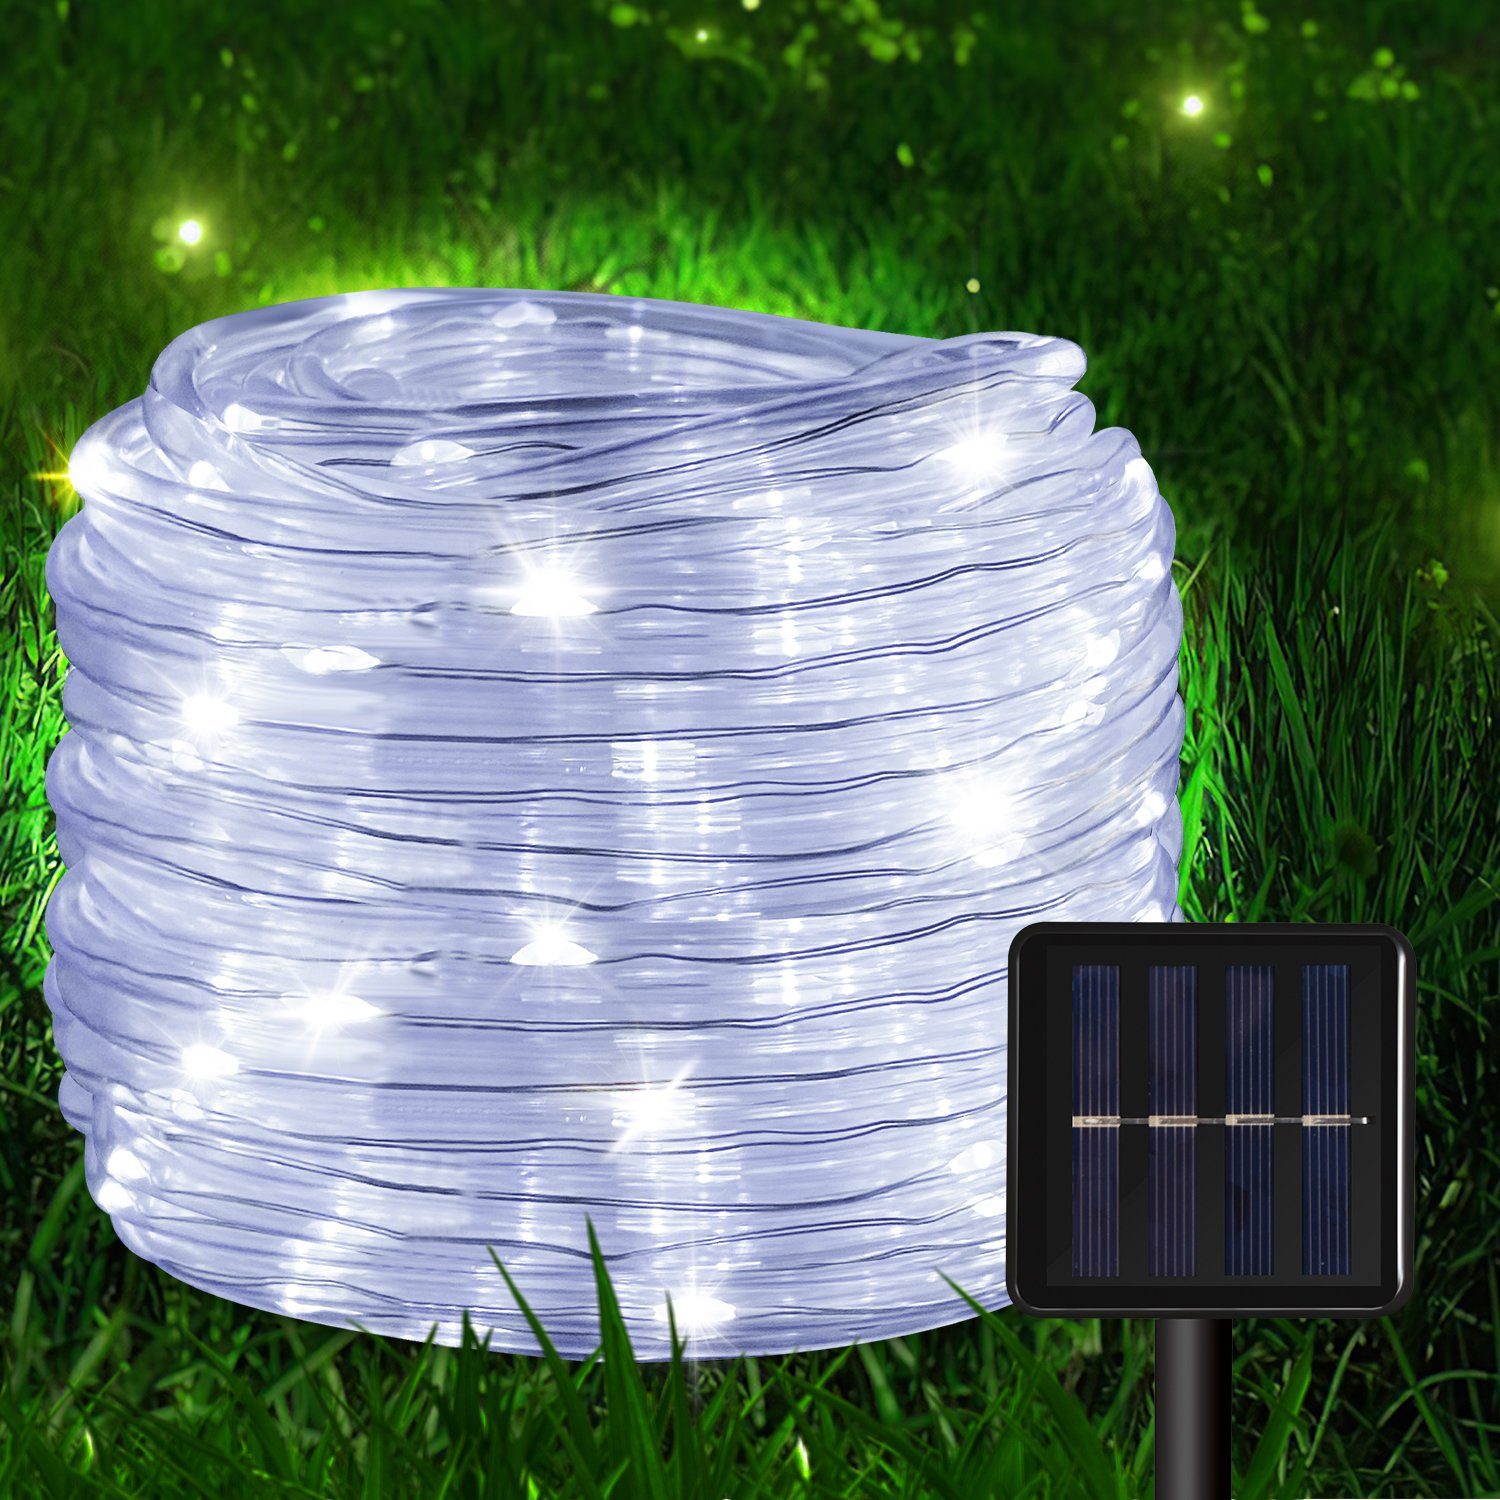 LED-Lichterschlauch Lichtschlauch 20m Solar Gimisgu Kaltweiß Lichterkette Wasserdicht Lichterschlauch LED